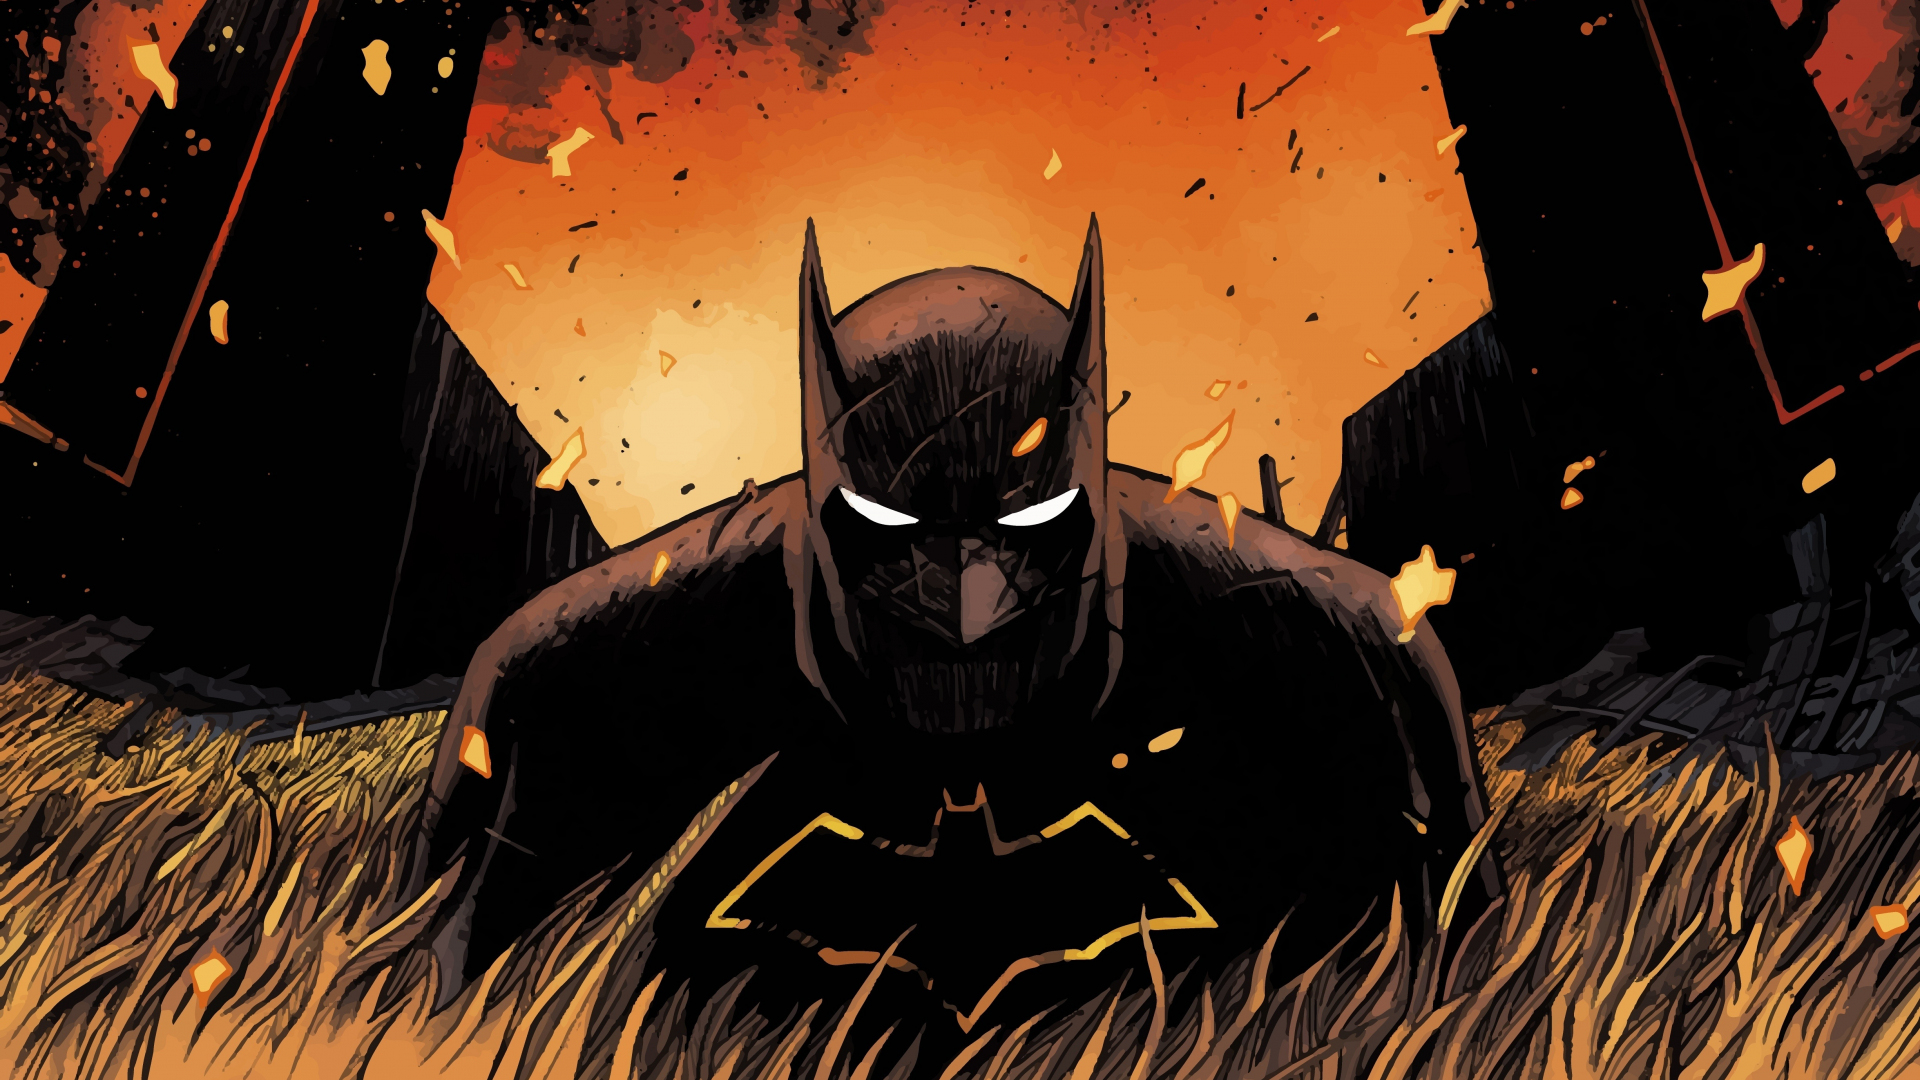 Download wallpaper: Batman Dark Knight 1920x1080